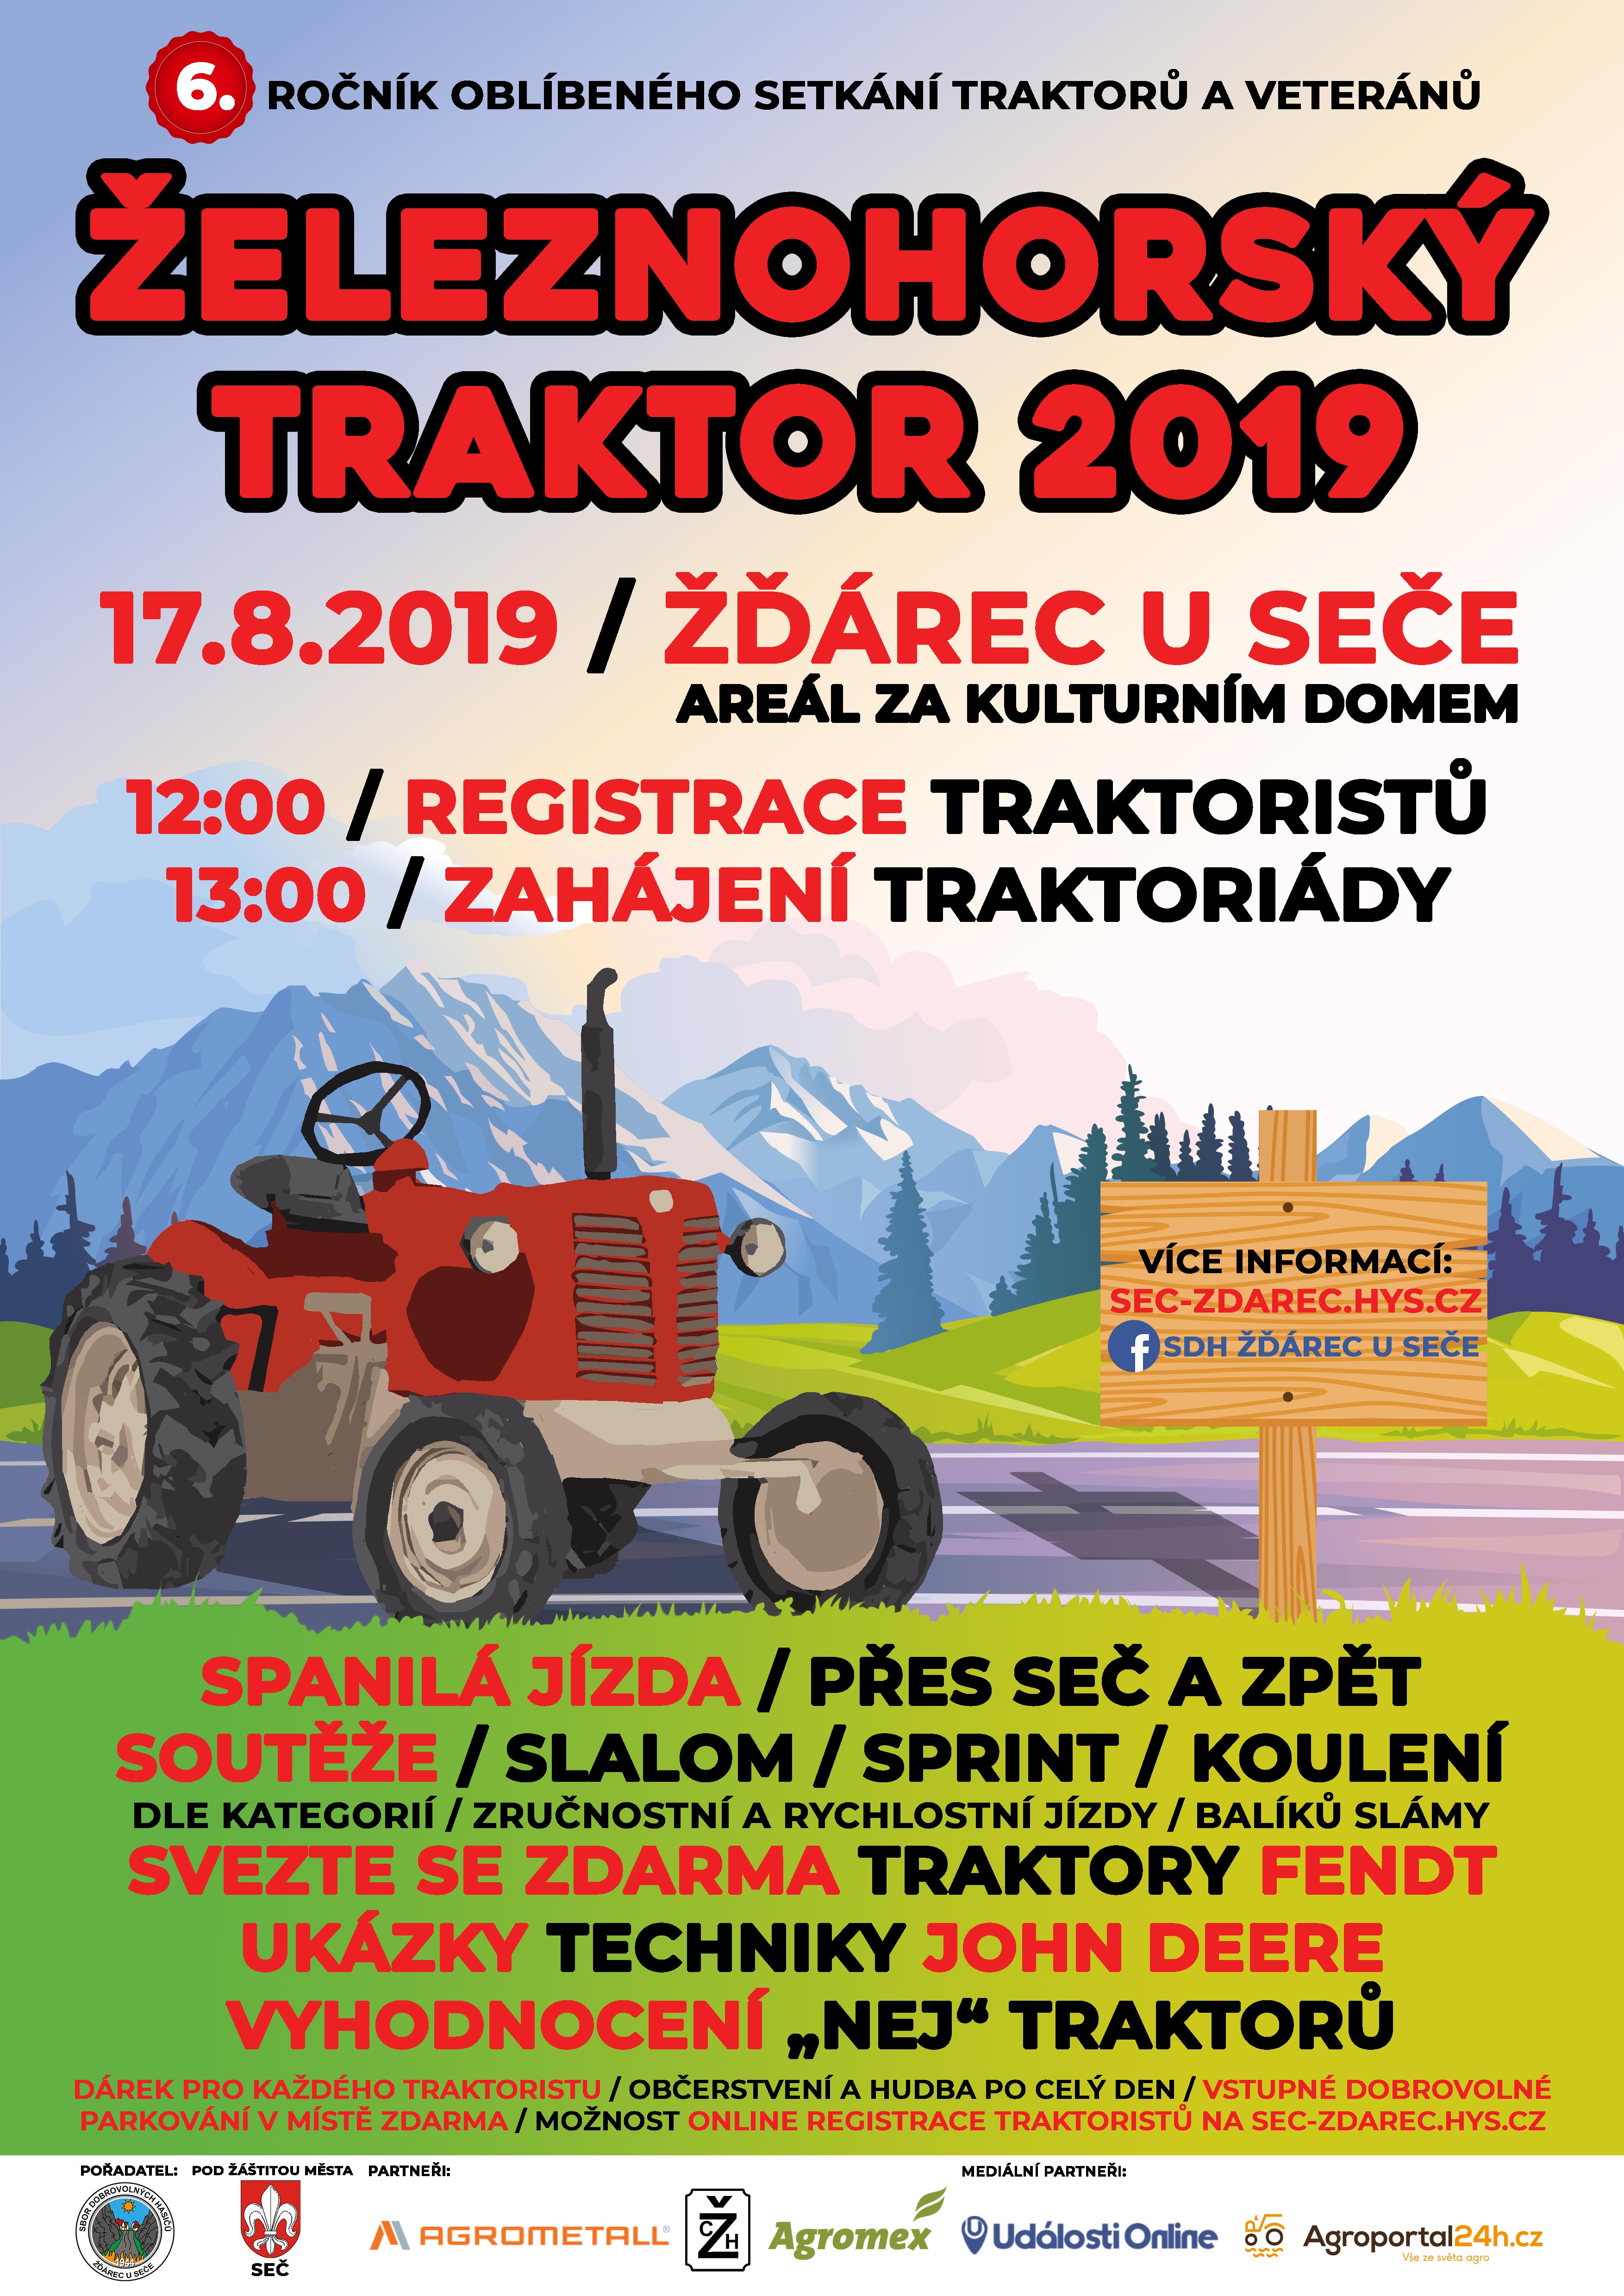 Traktoriáda Železnohorský traktor 2019 - Žďárec u Seče -Seč - Žďárec u Seče